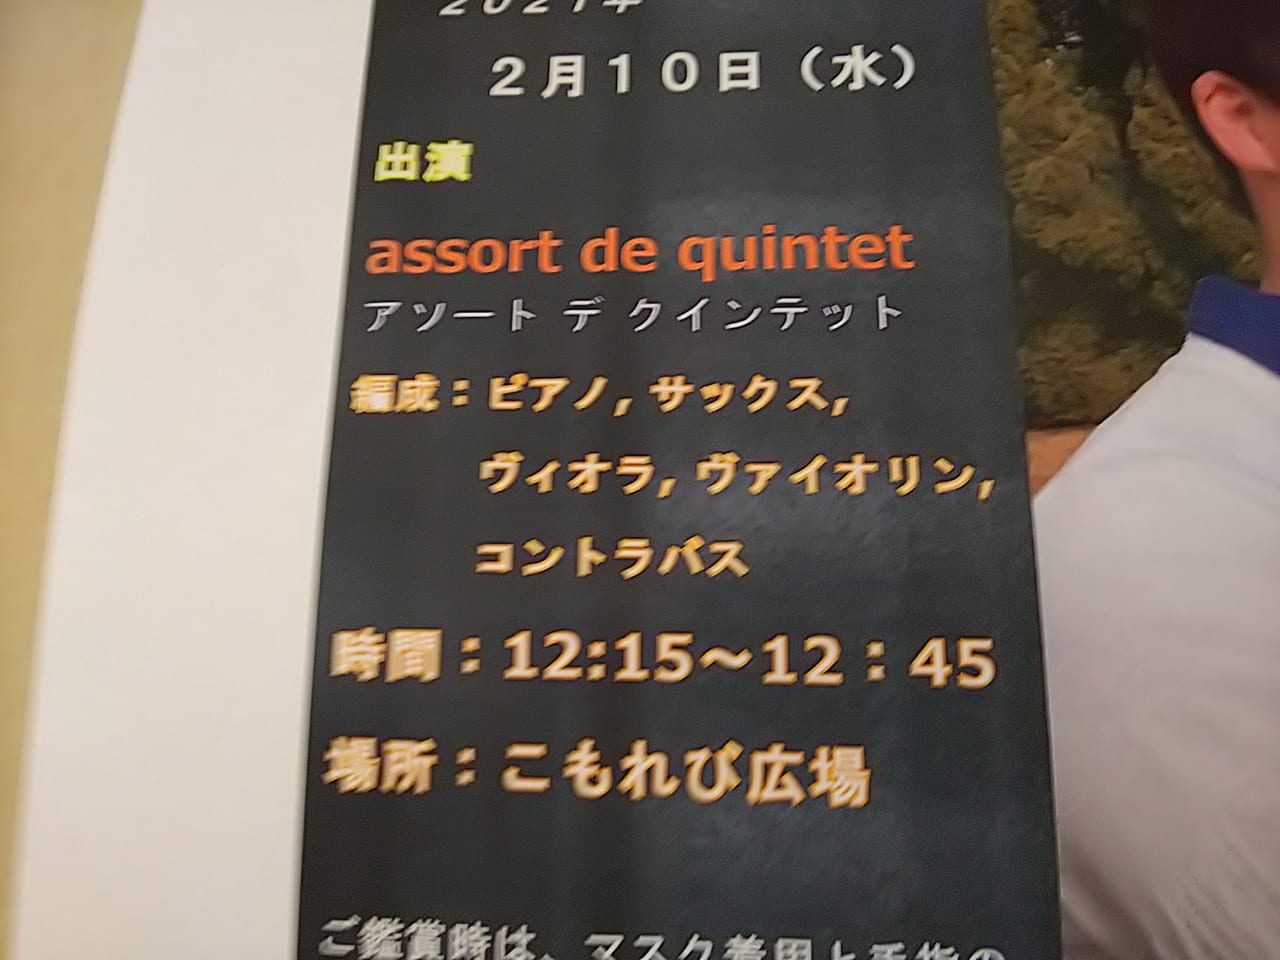 東広島芸術文化ホールくららロビーコンサートのチラシ